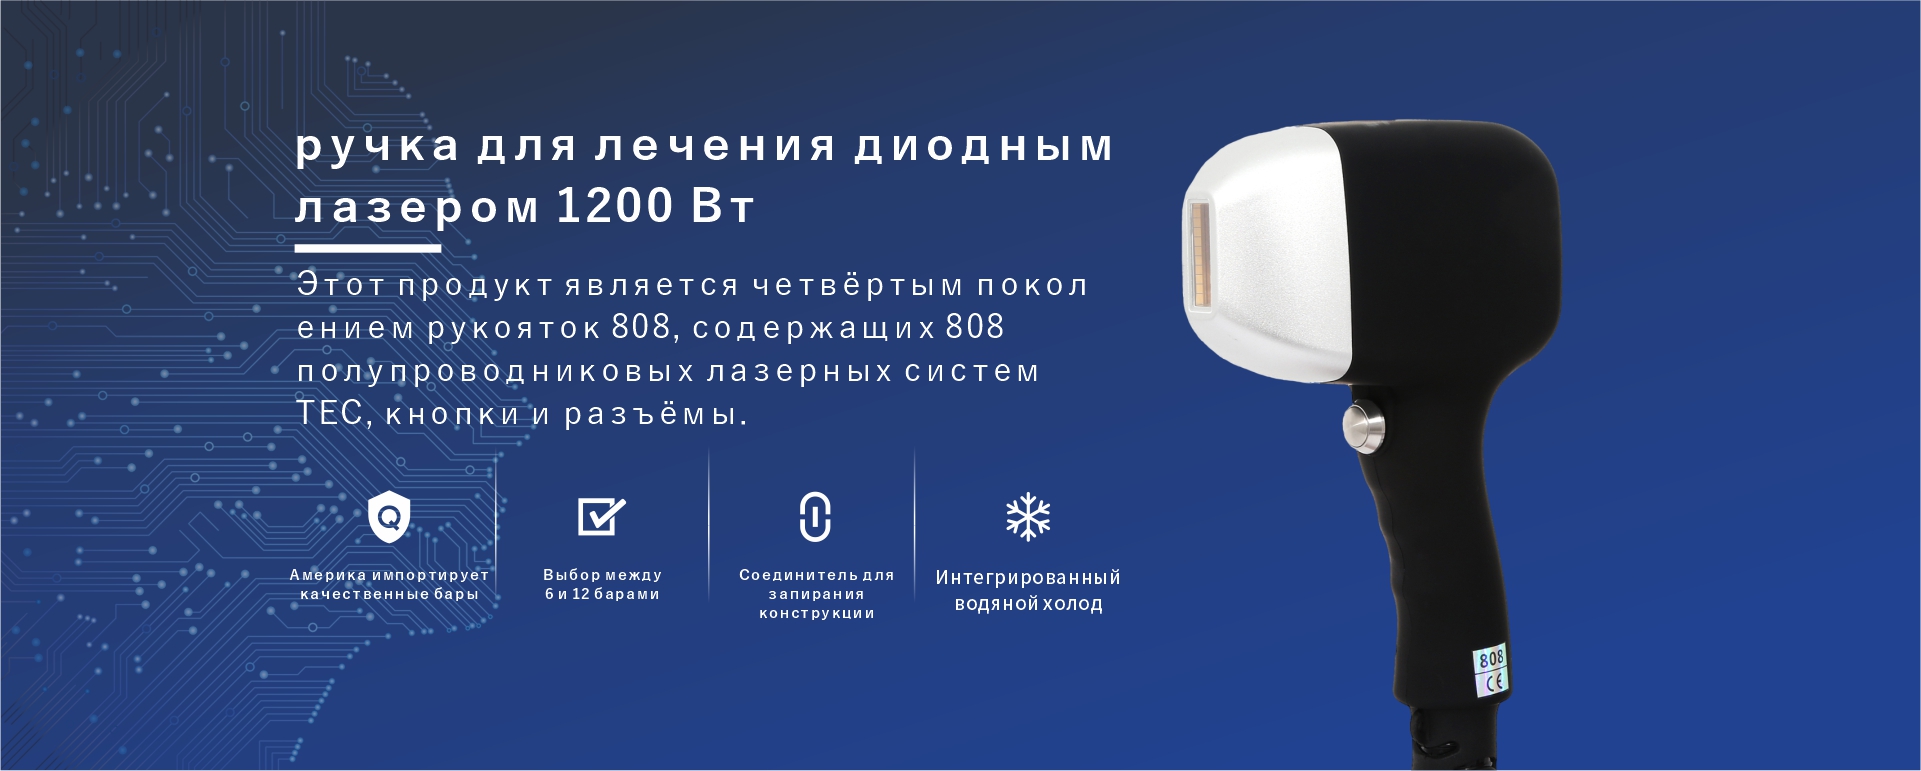 脸书网站海报俄语2